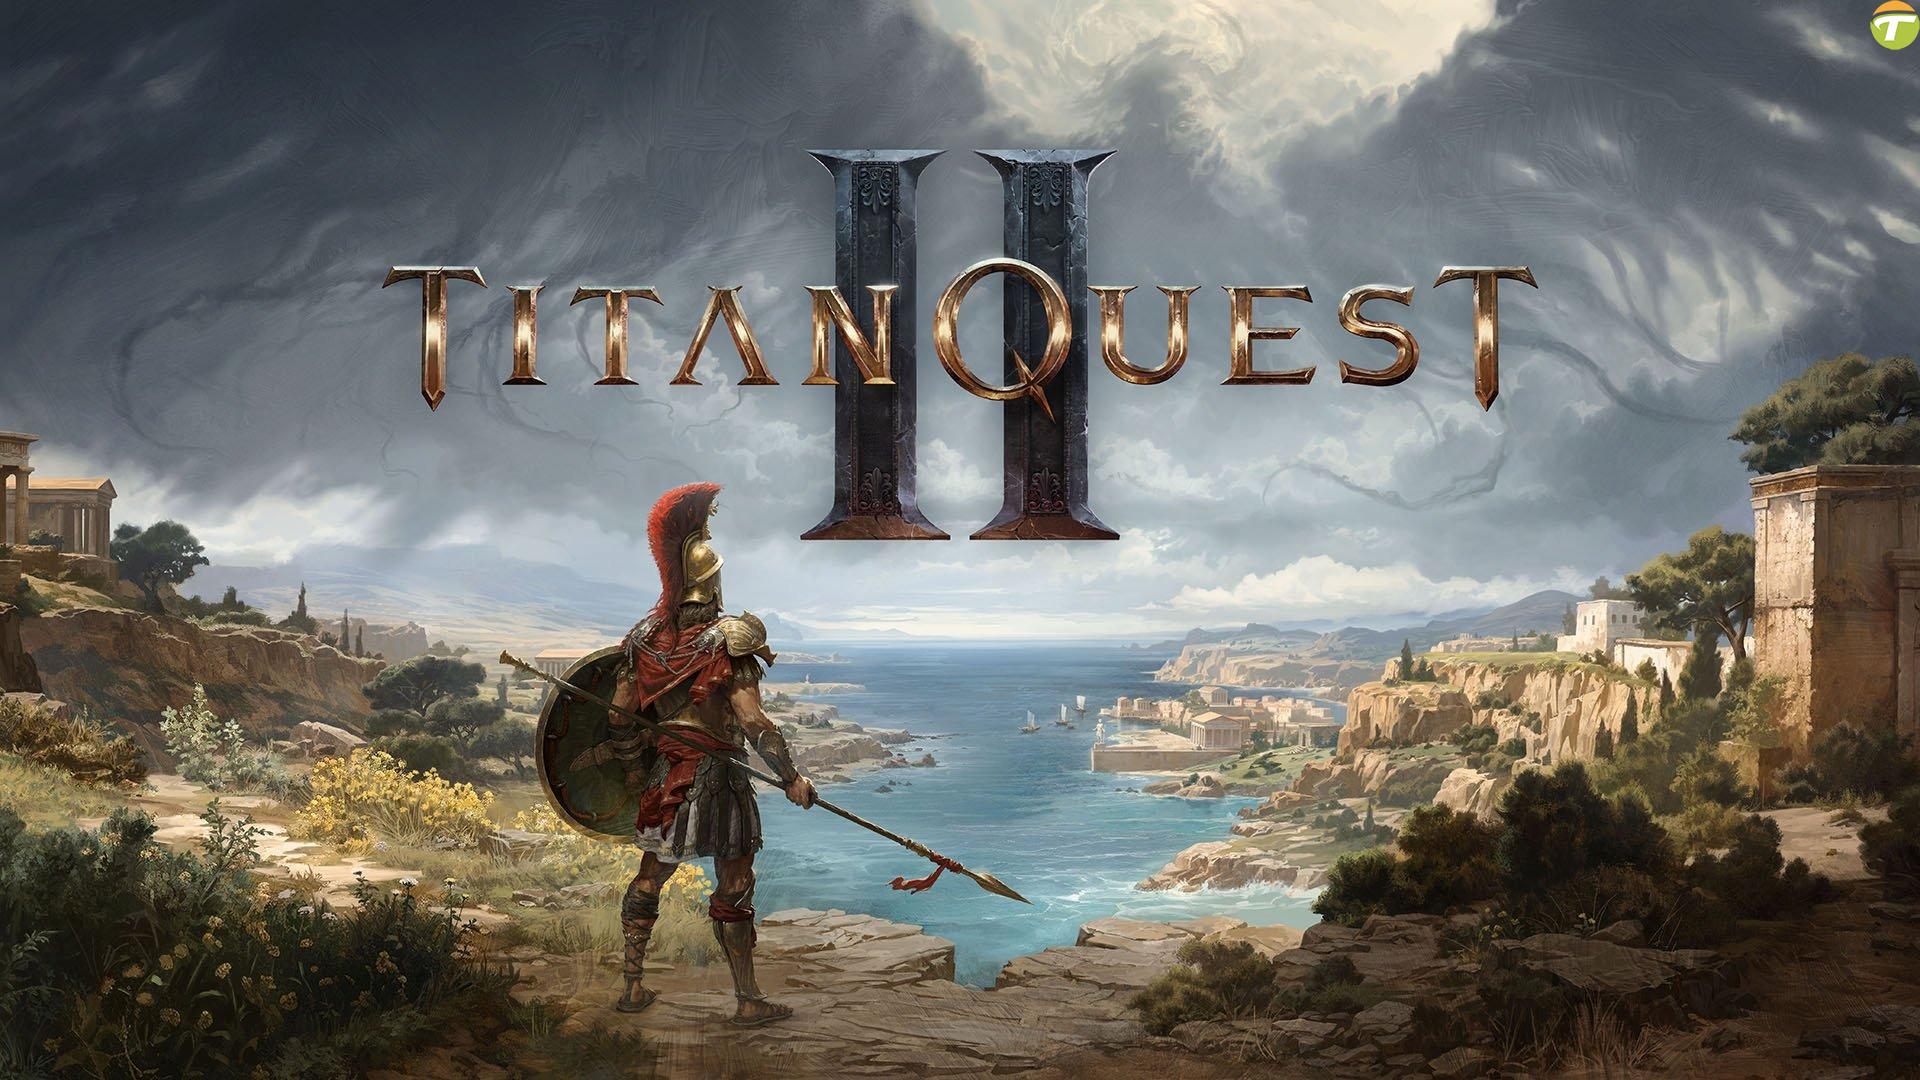 titan quest 2 resmi olarak duyuruldu iste fragman c13eCkBv